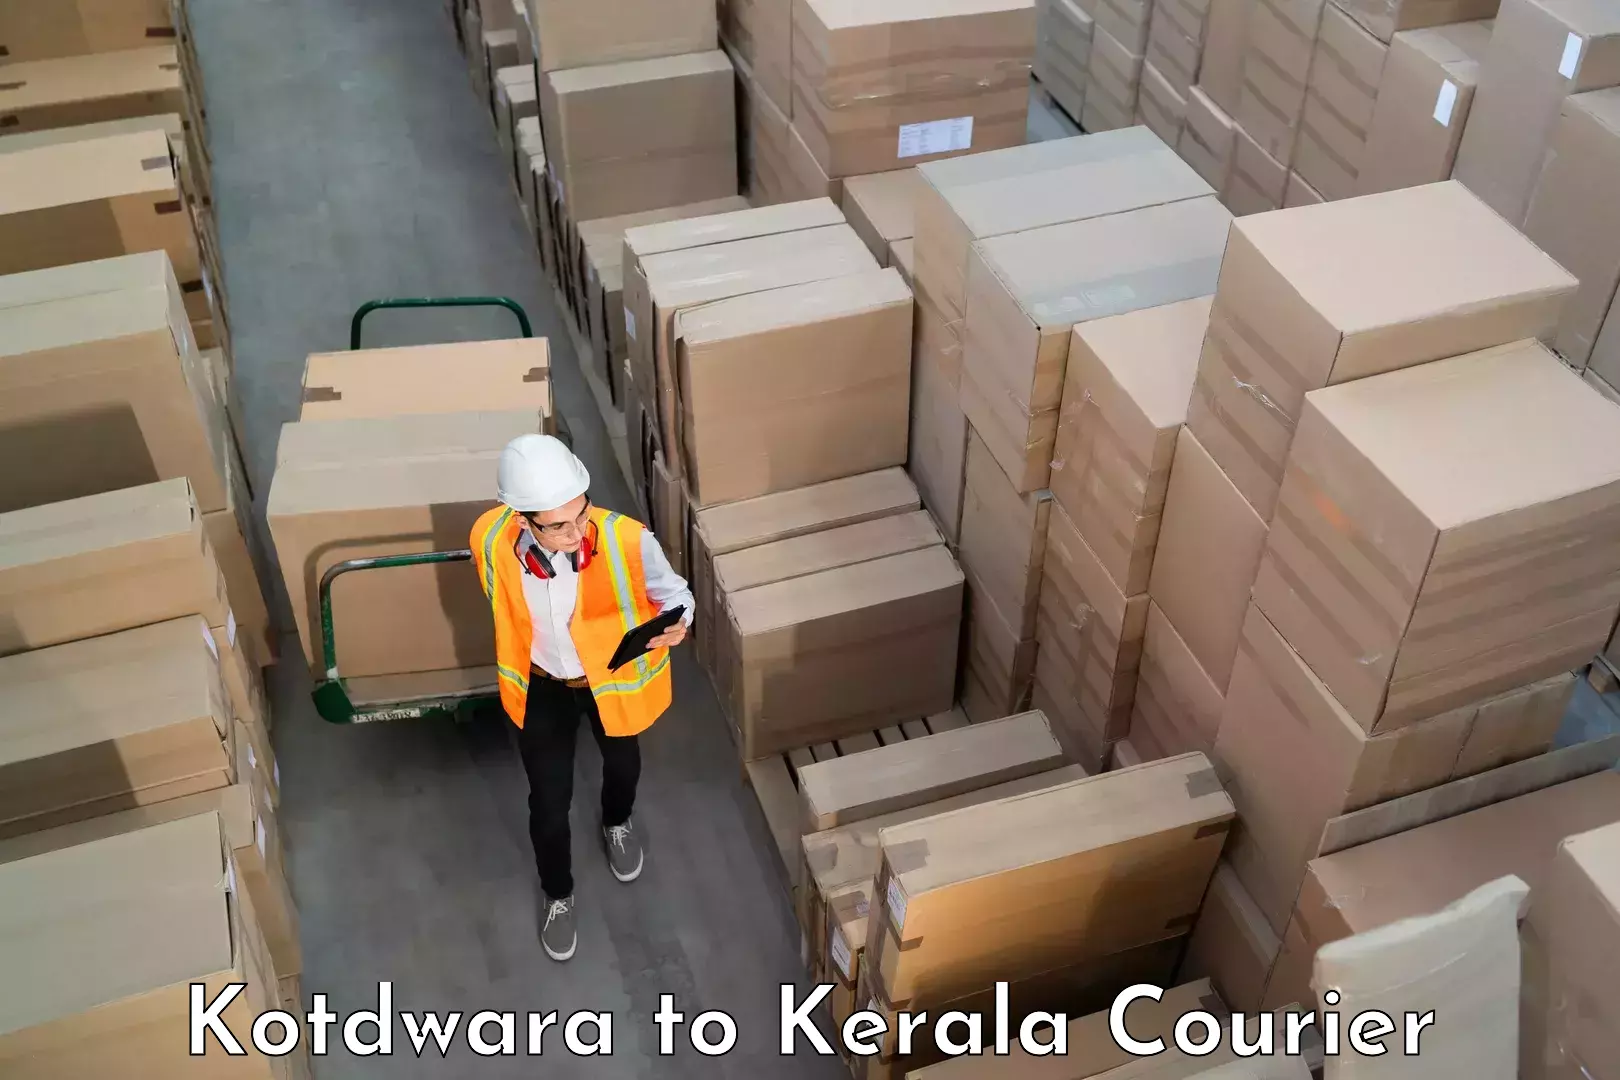 Train station baggage courier Kotdwara to Kerala